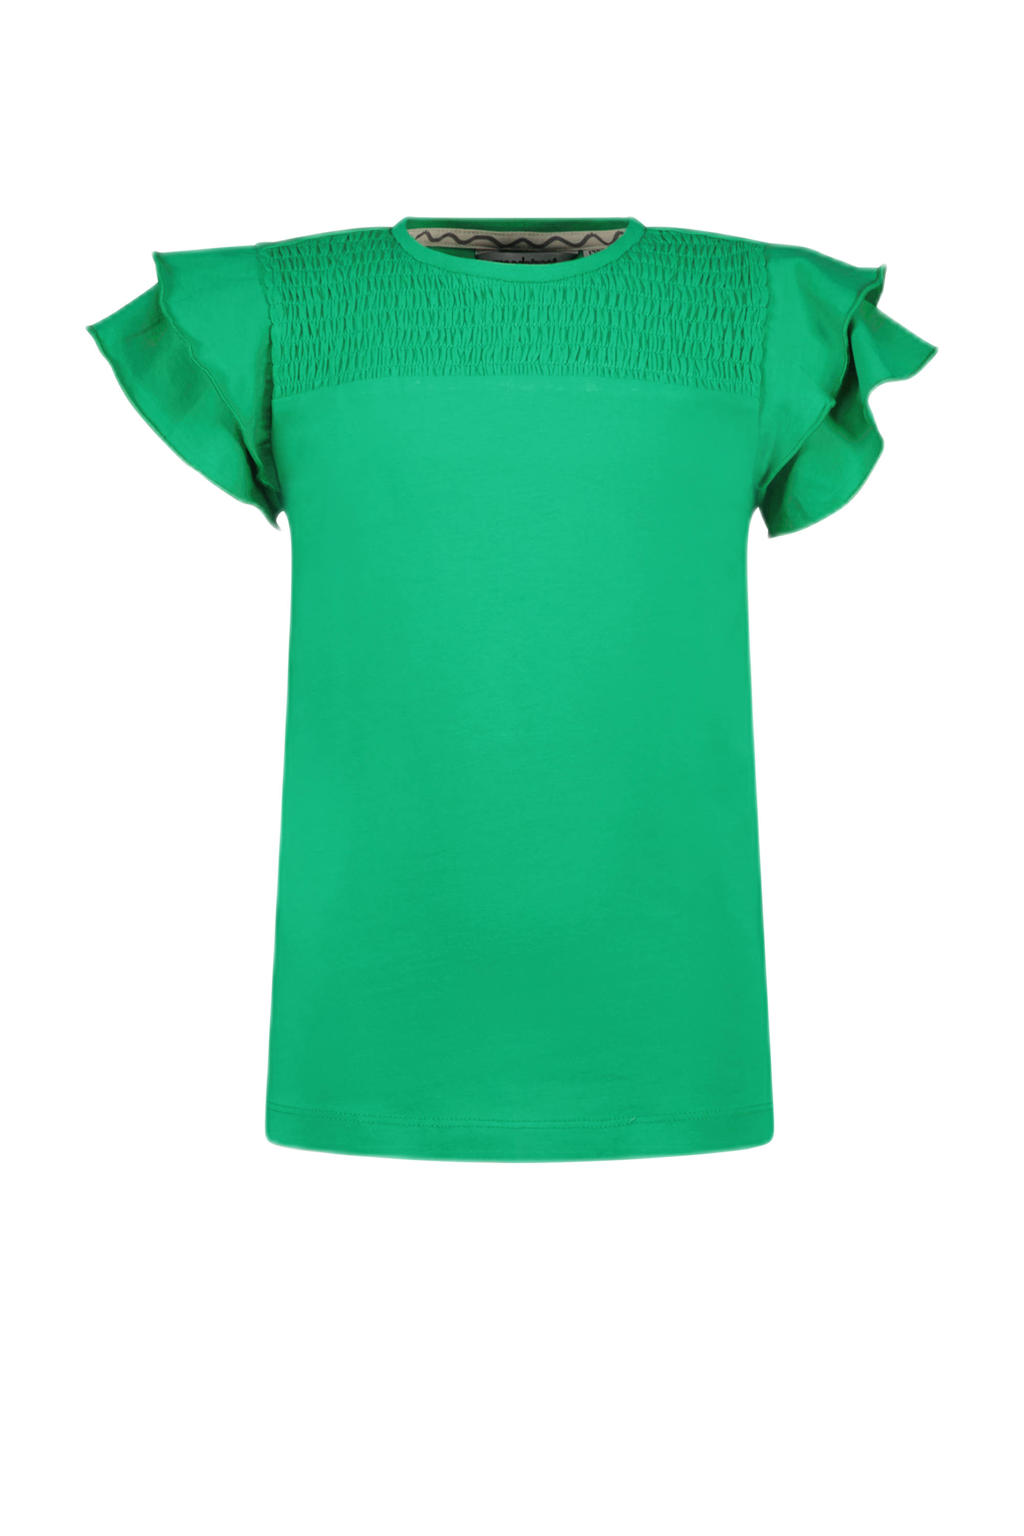 Groene meisjes Moodstreet T-shirt van duurzaam stretchkatoen met korte mouwen, ronde hals en ruches